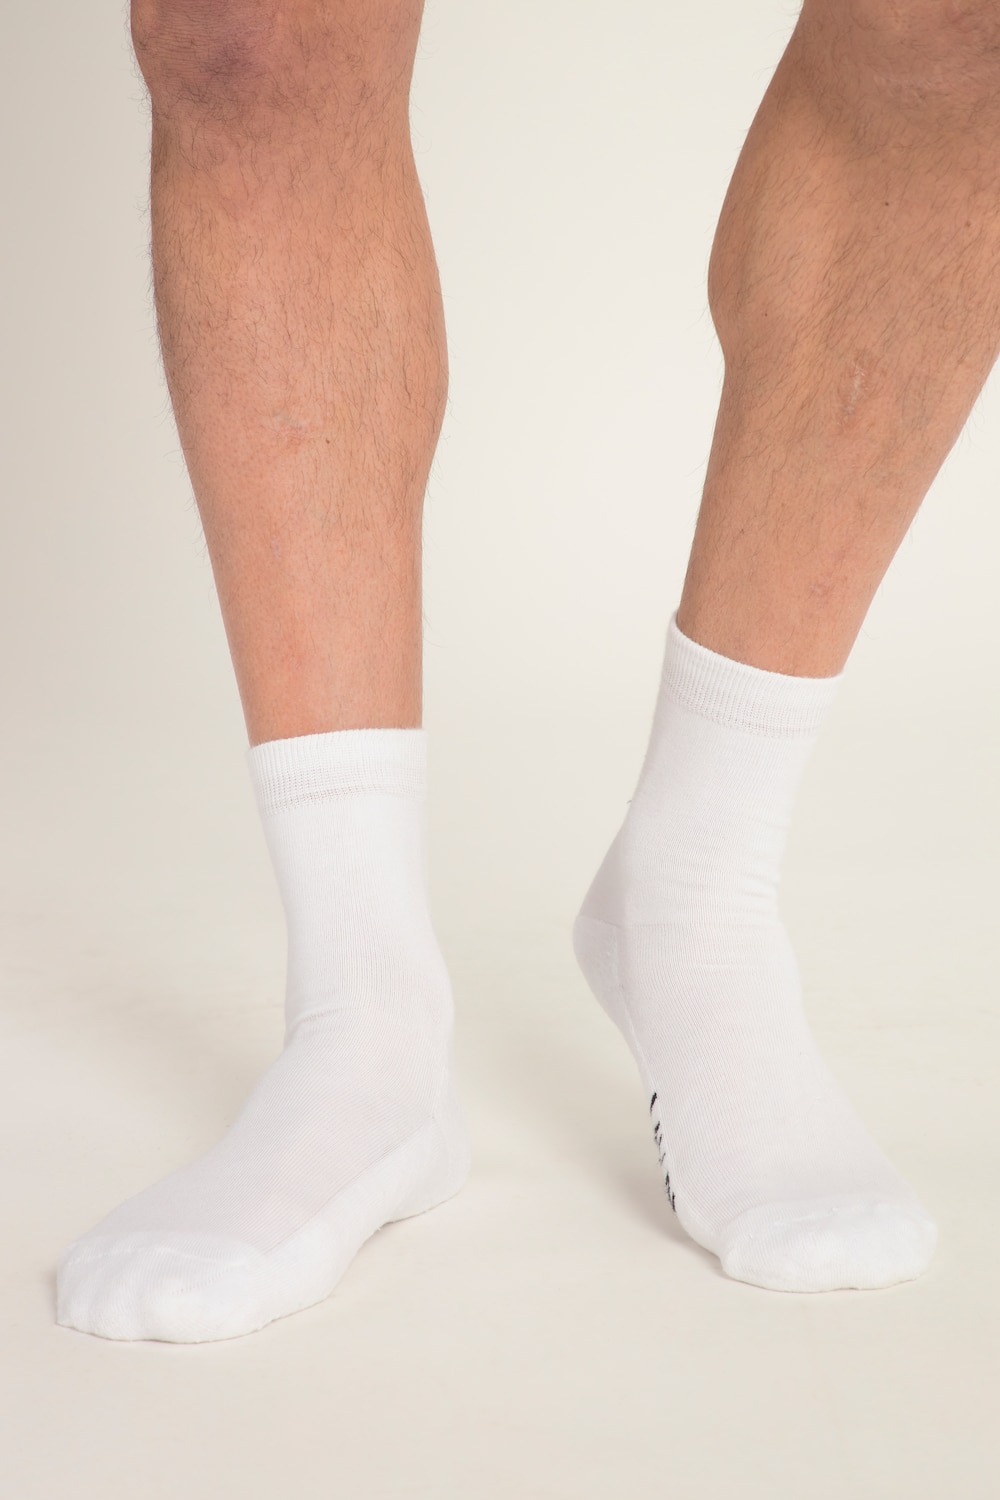 grandes tailles chaussettes de tennis jay-pi, femmes, blanc, taille: 39-42, coton, jay-pi